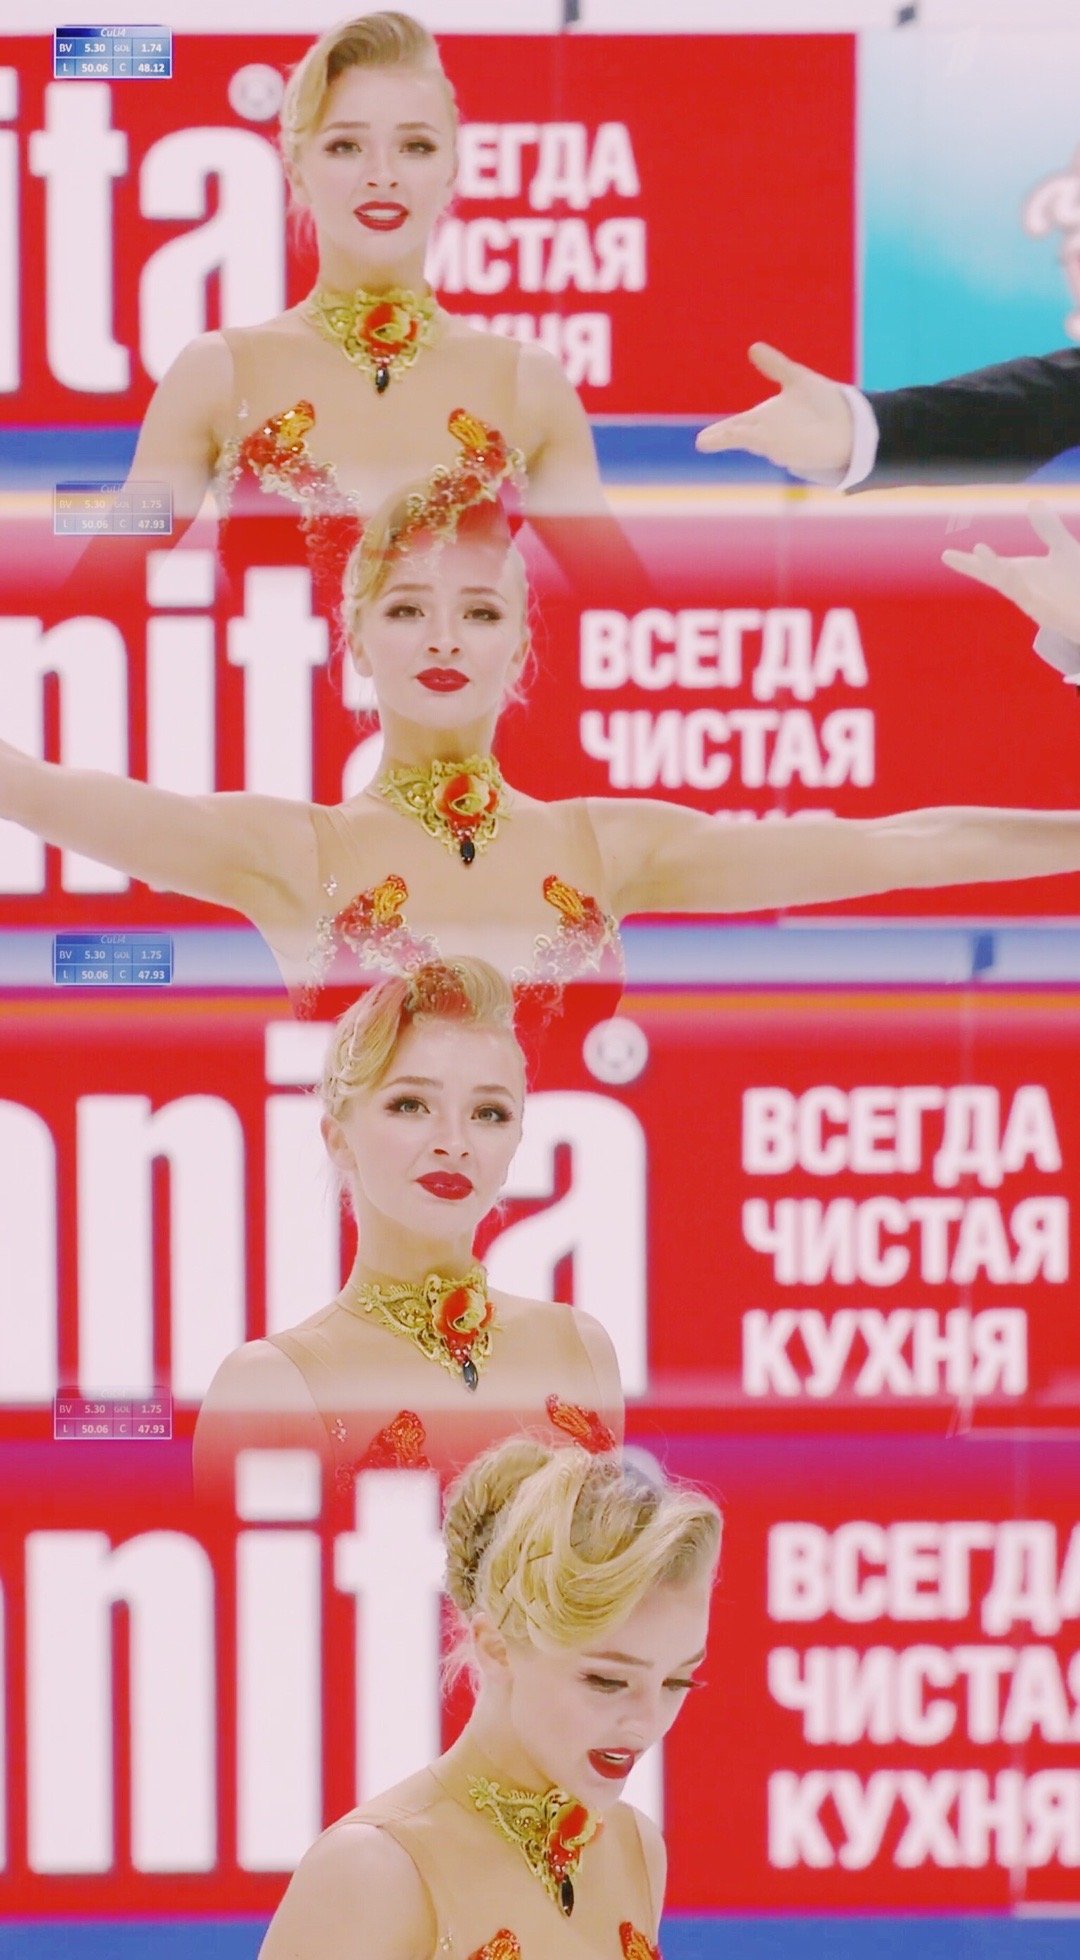 Mỹ nữ trượt băng người Nga được khuyên bỏ nghề làm người mẫu vì quá đẹp - ảnh 1